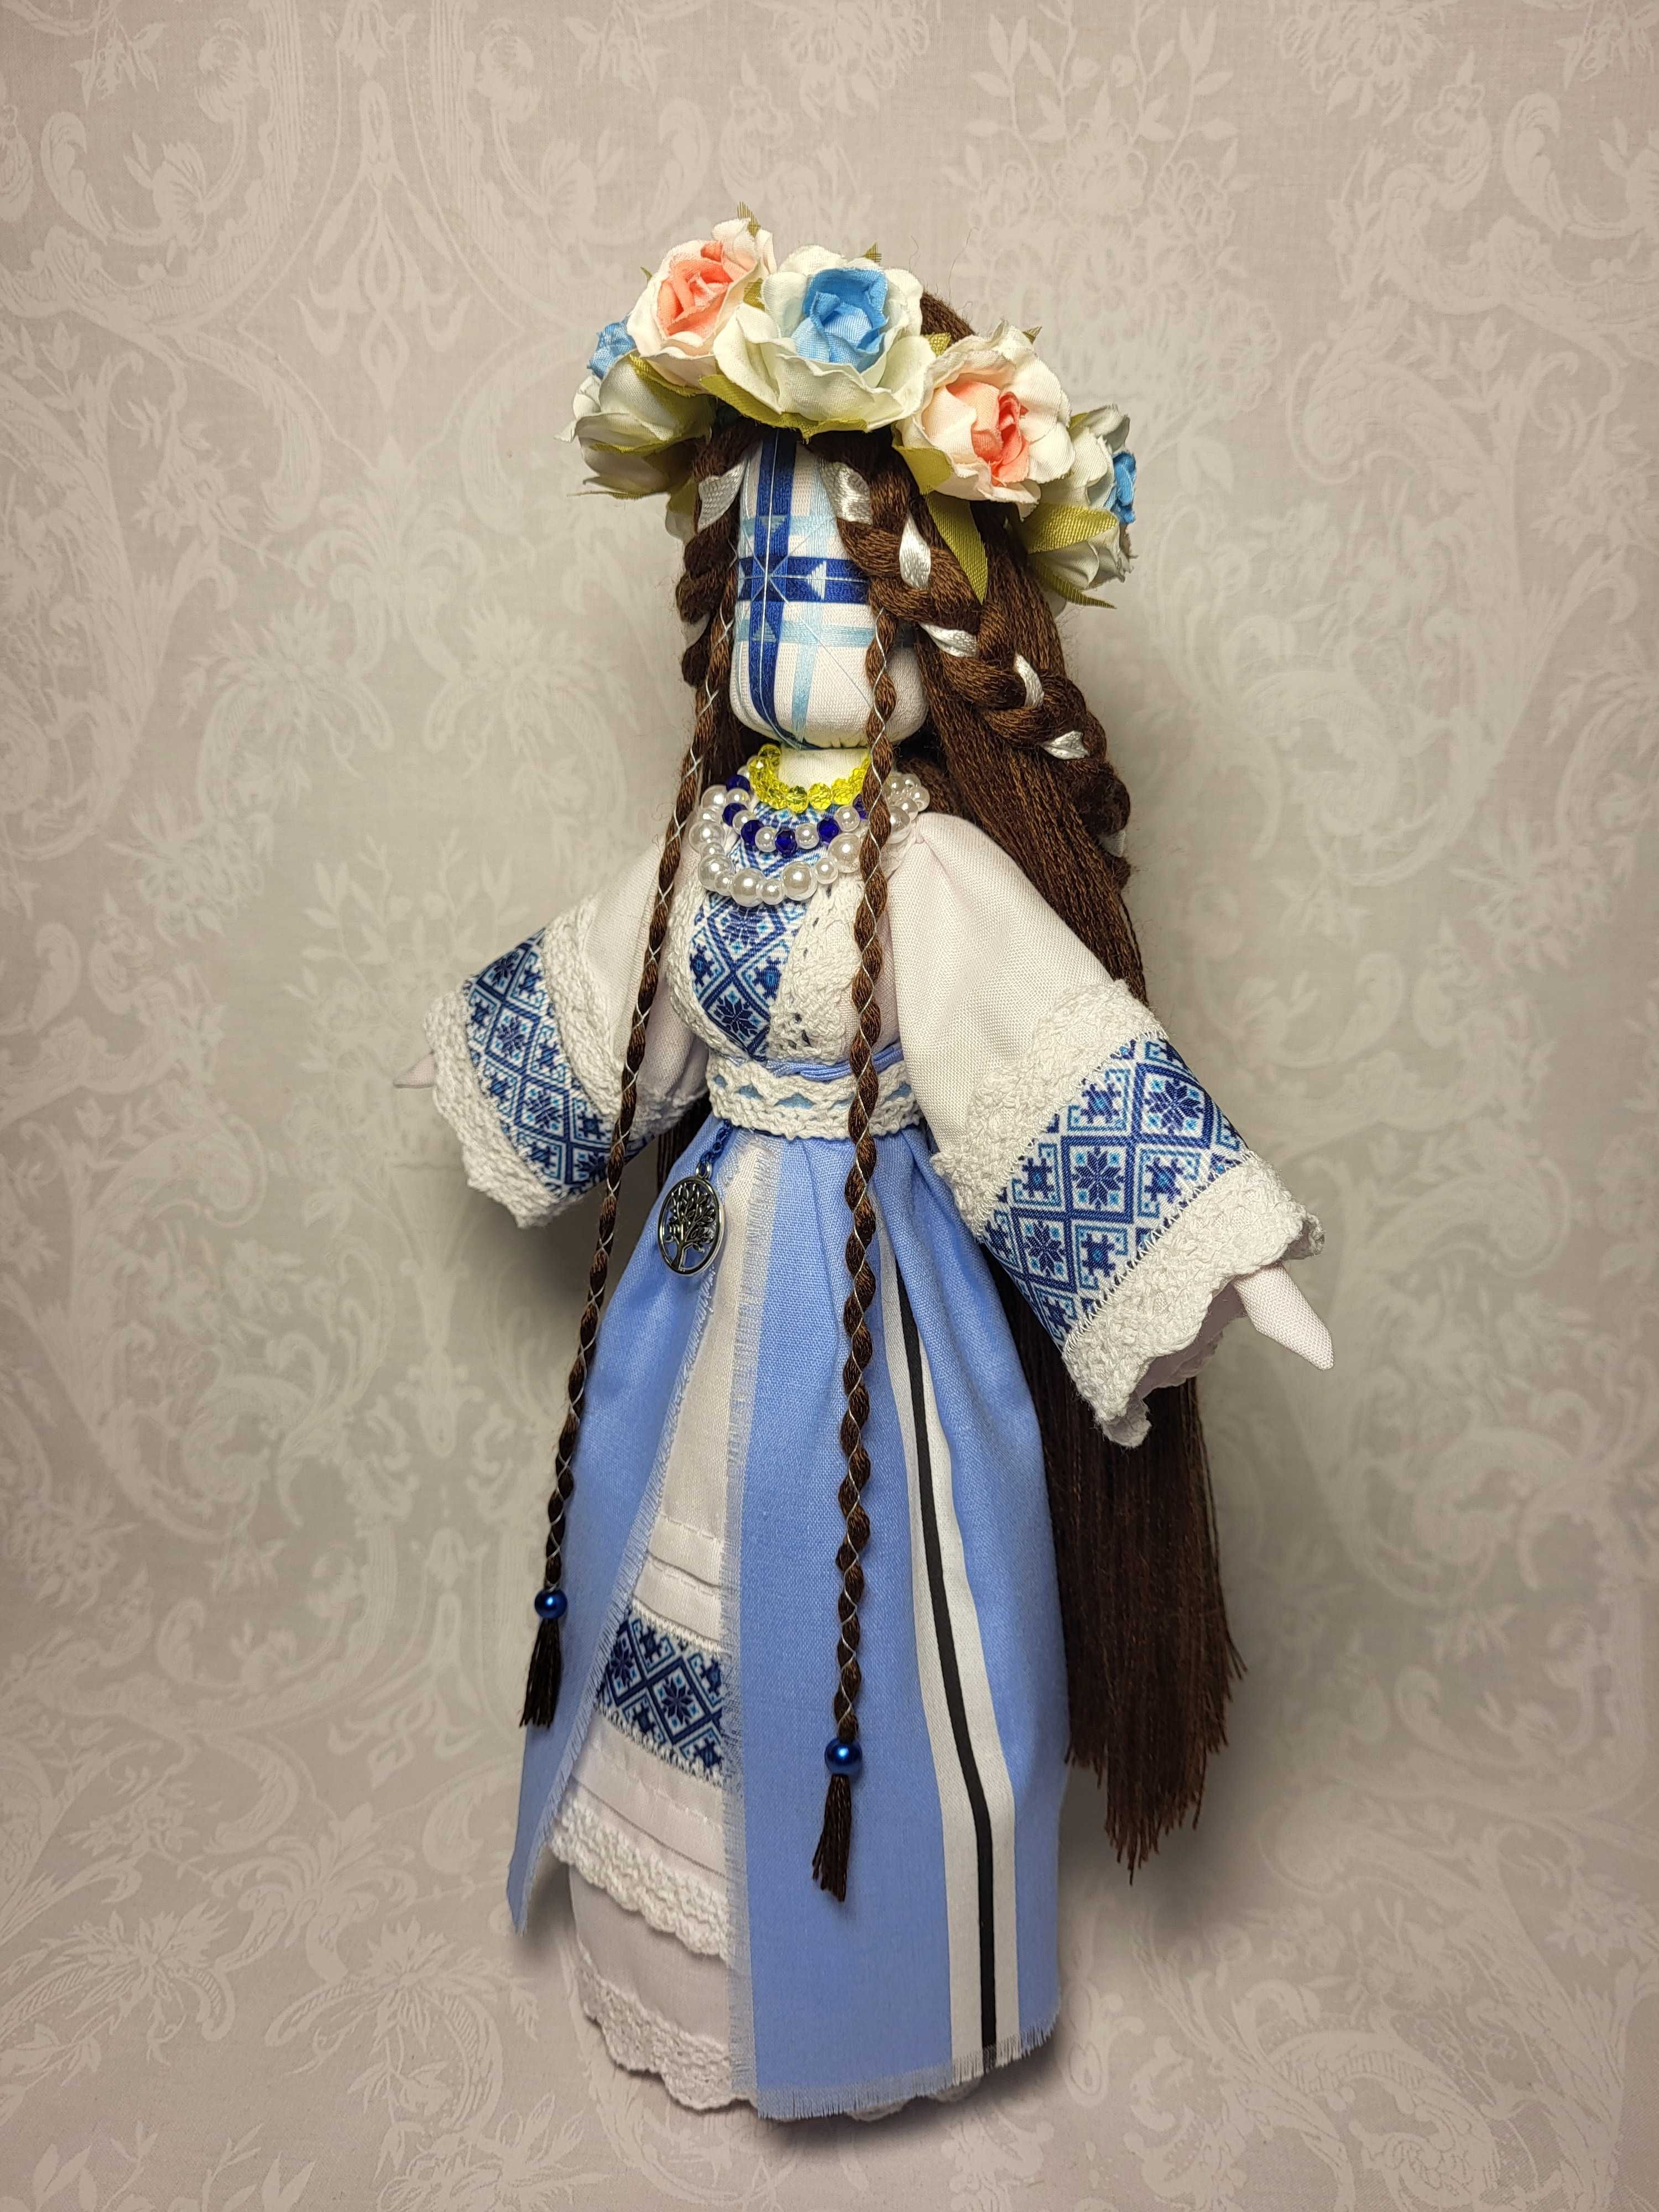 МОТАНКА АВТОРСЬКА, сучасна текстильна лялька, оберіг, ручна робота укр